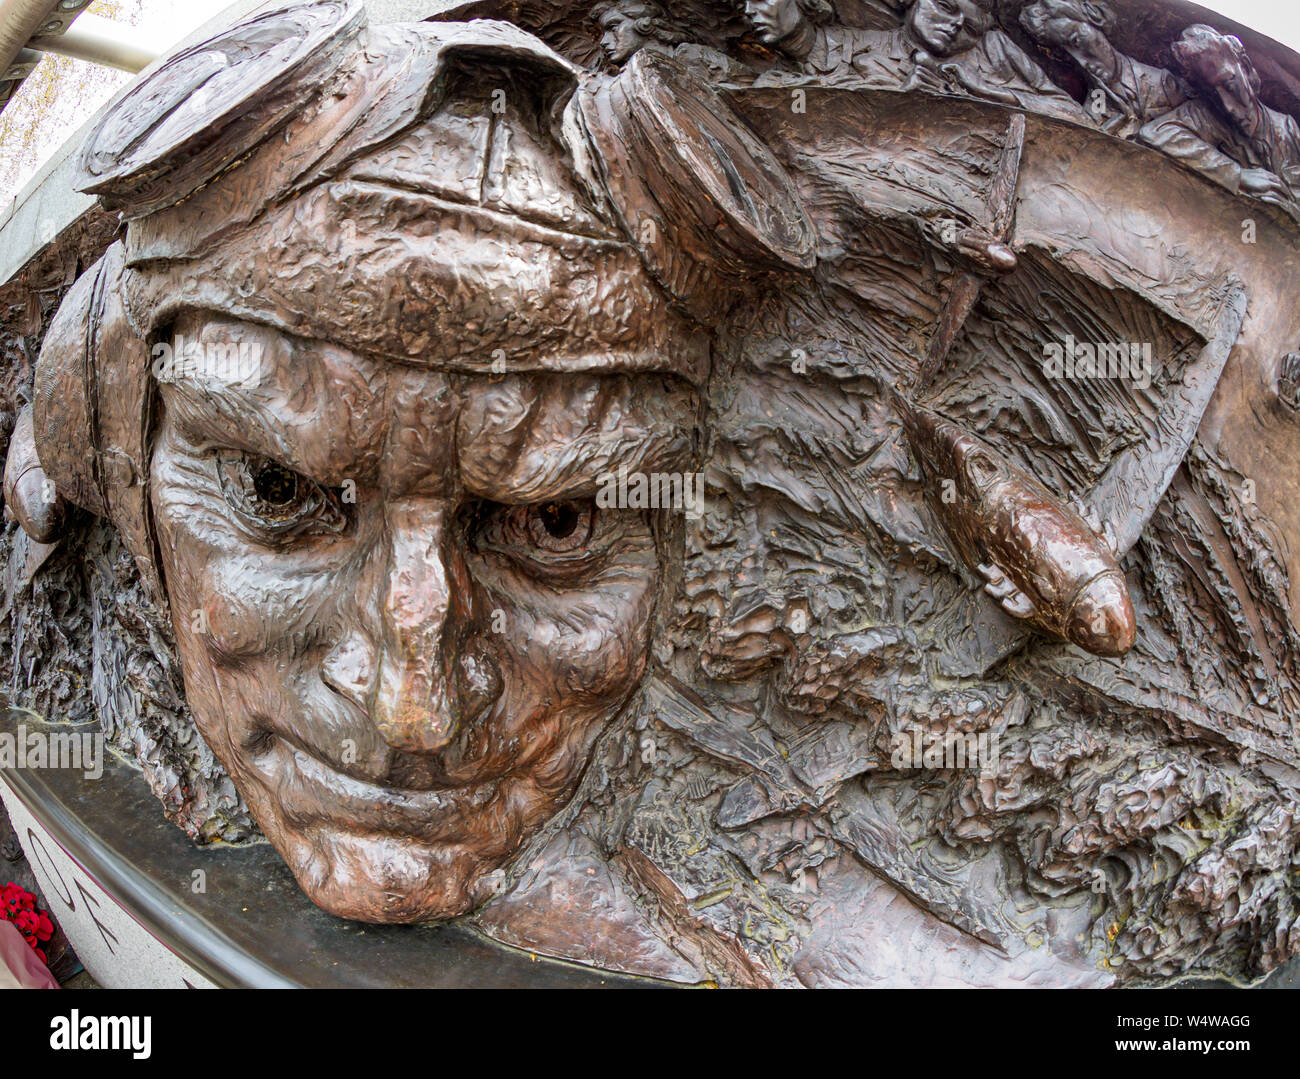 Battaglia di Bretagna monumento, Victoria Embankment, Londra. Commemora la cui hanno preso parte alla battaglia durante il WW2. Prese con Fish Eye lens Foto Stock